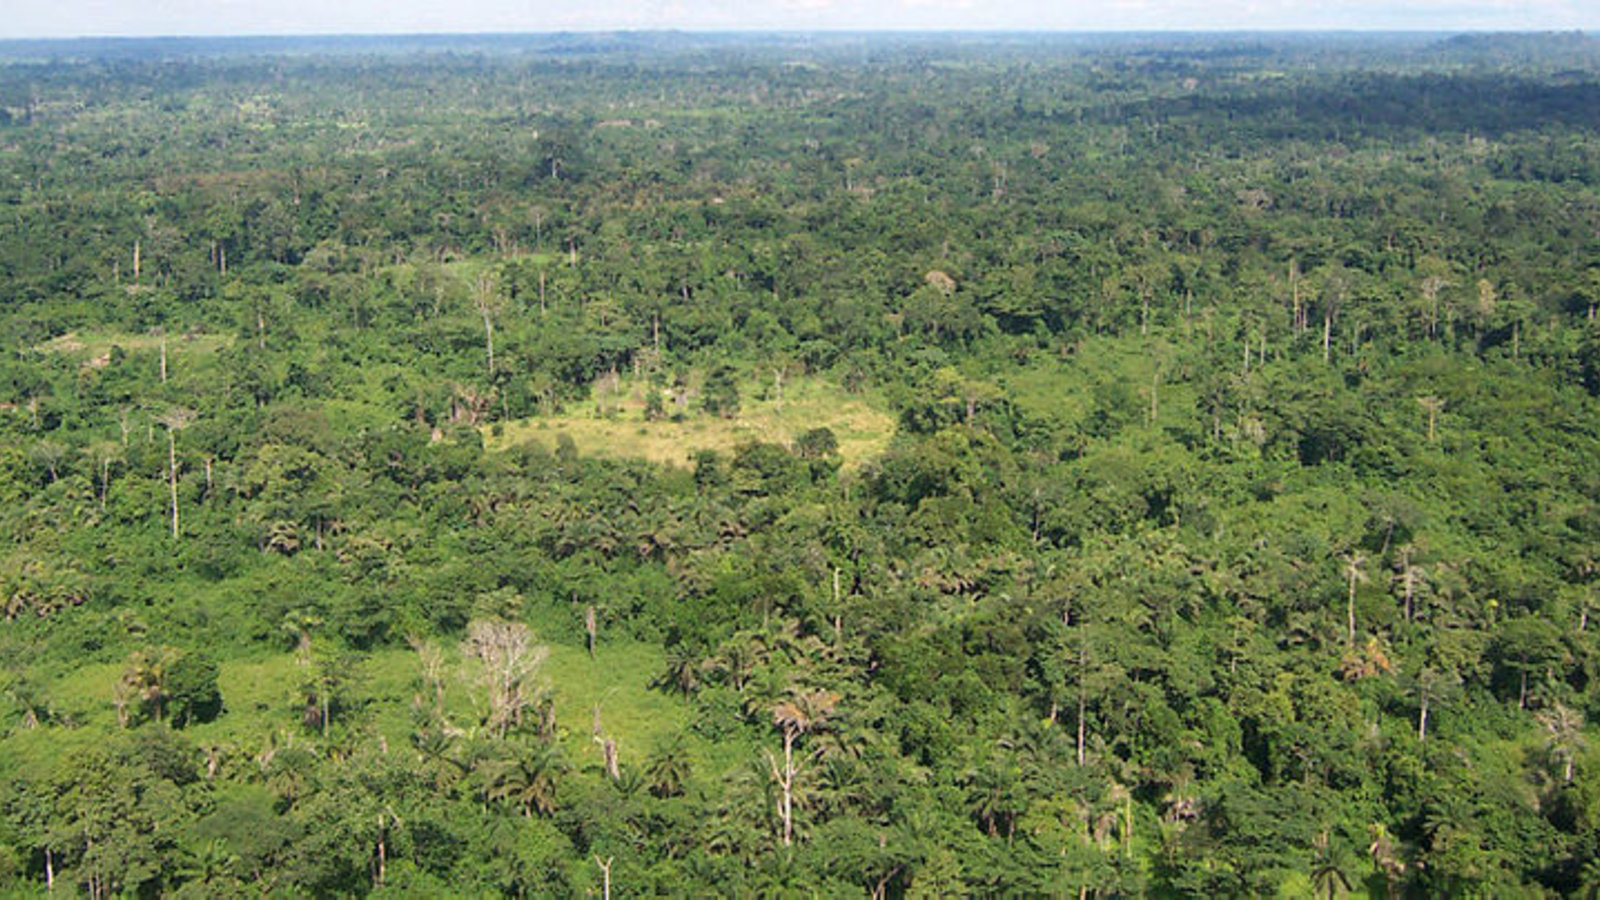 liberia_tropical_forest_usaid_wikicom.jpg